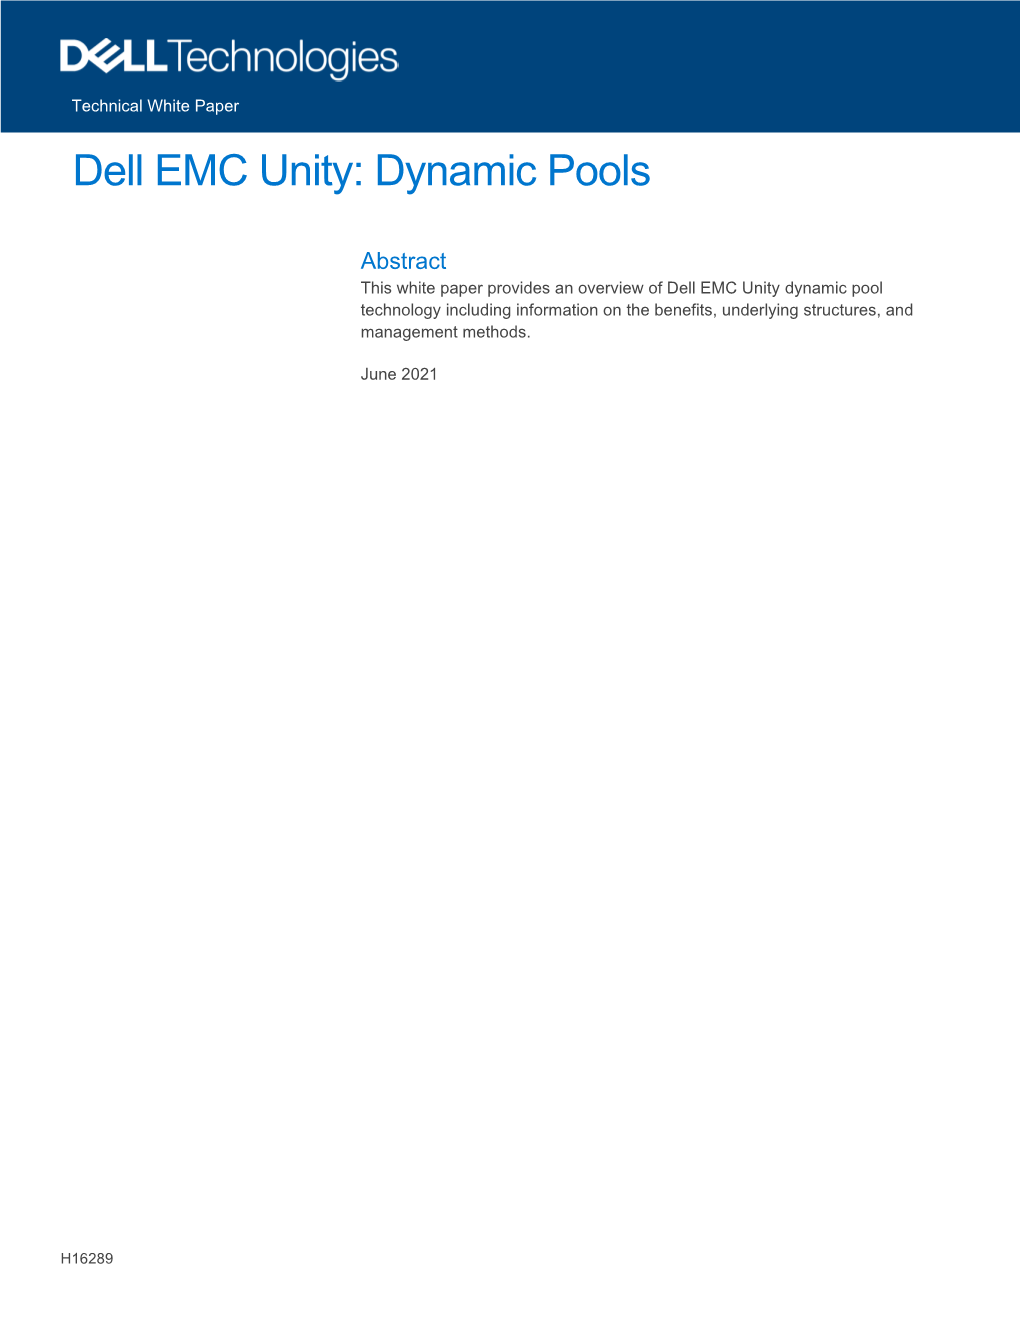 Dell EMC Unity: Dynamic Pools